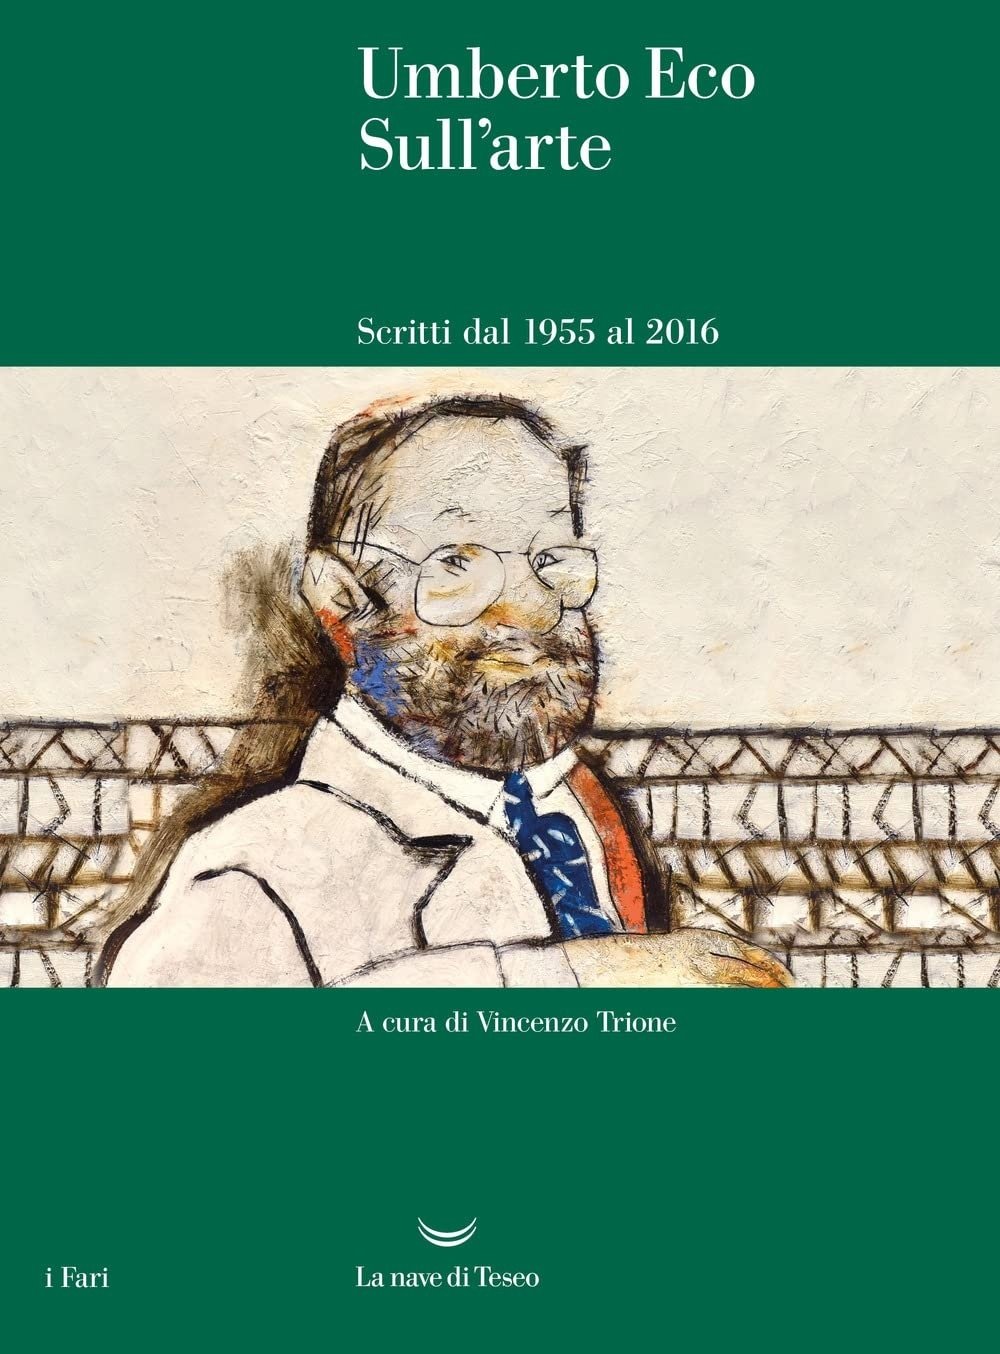 Umberto Eco – Sull'arte. Scritti dal 1955 al 2016 (La nave di Teseo, Milano 2022)